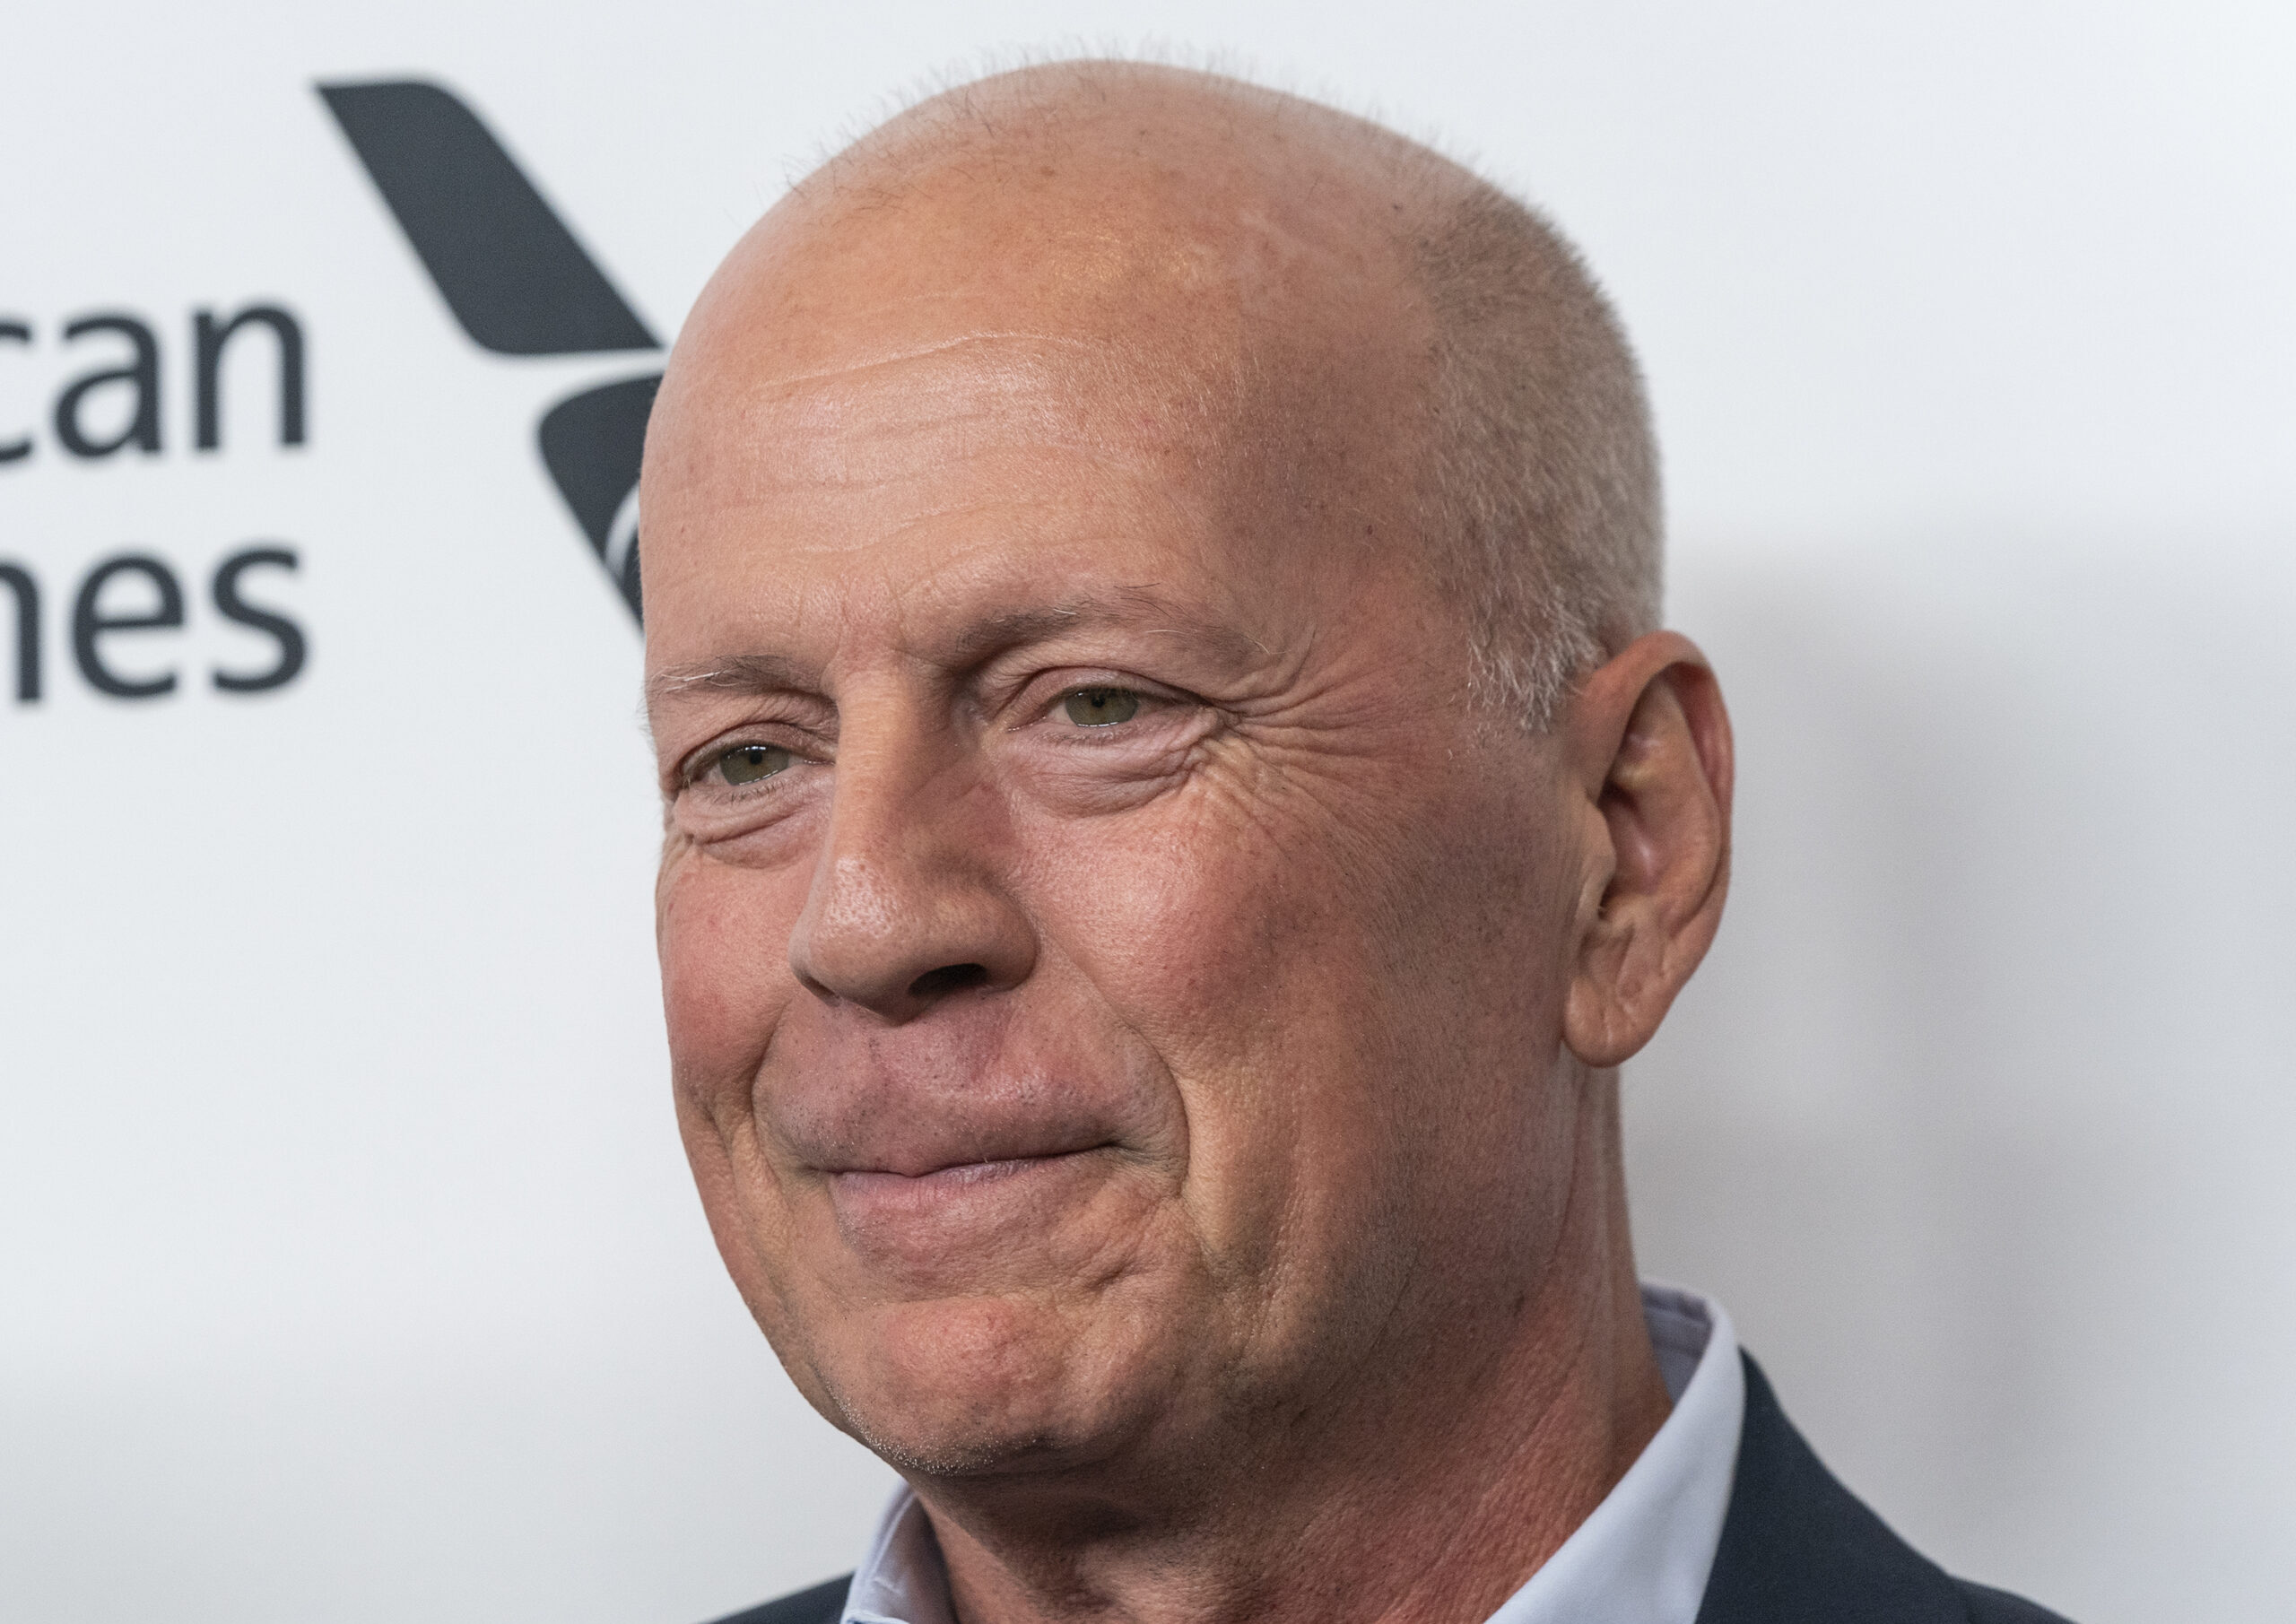 El mítico actor Bruce Willis se retira del cine por problemas de salud